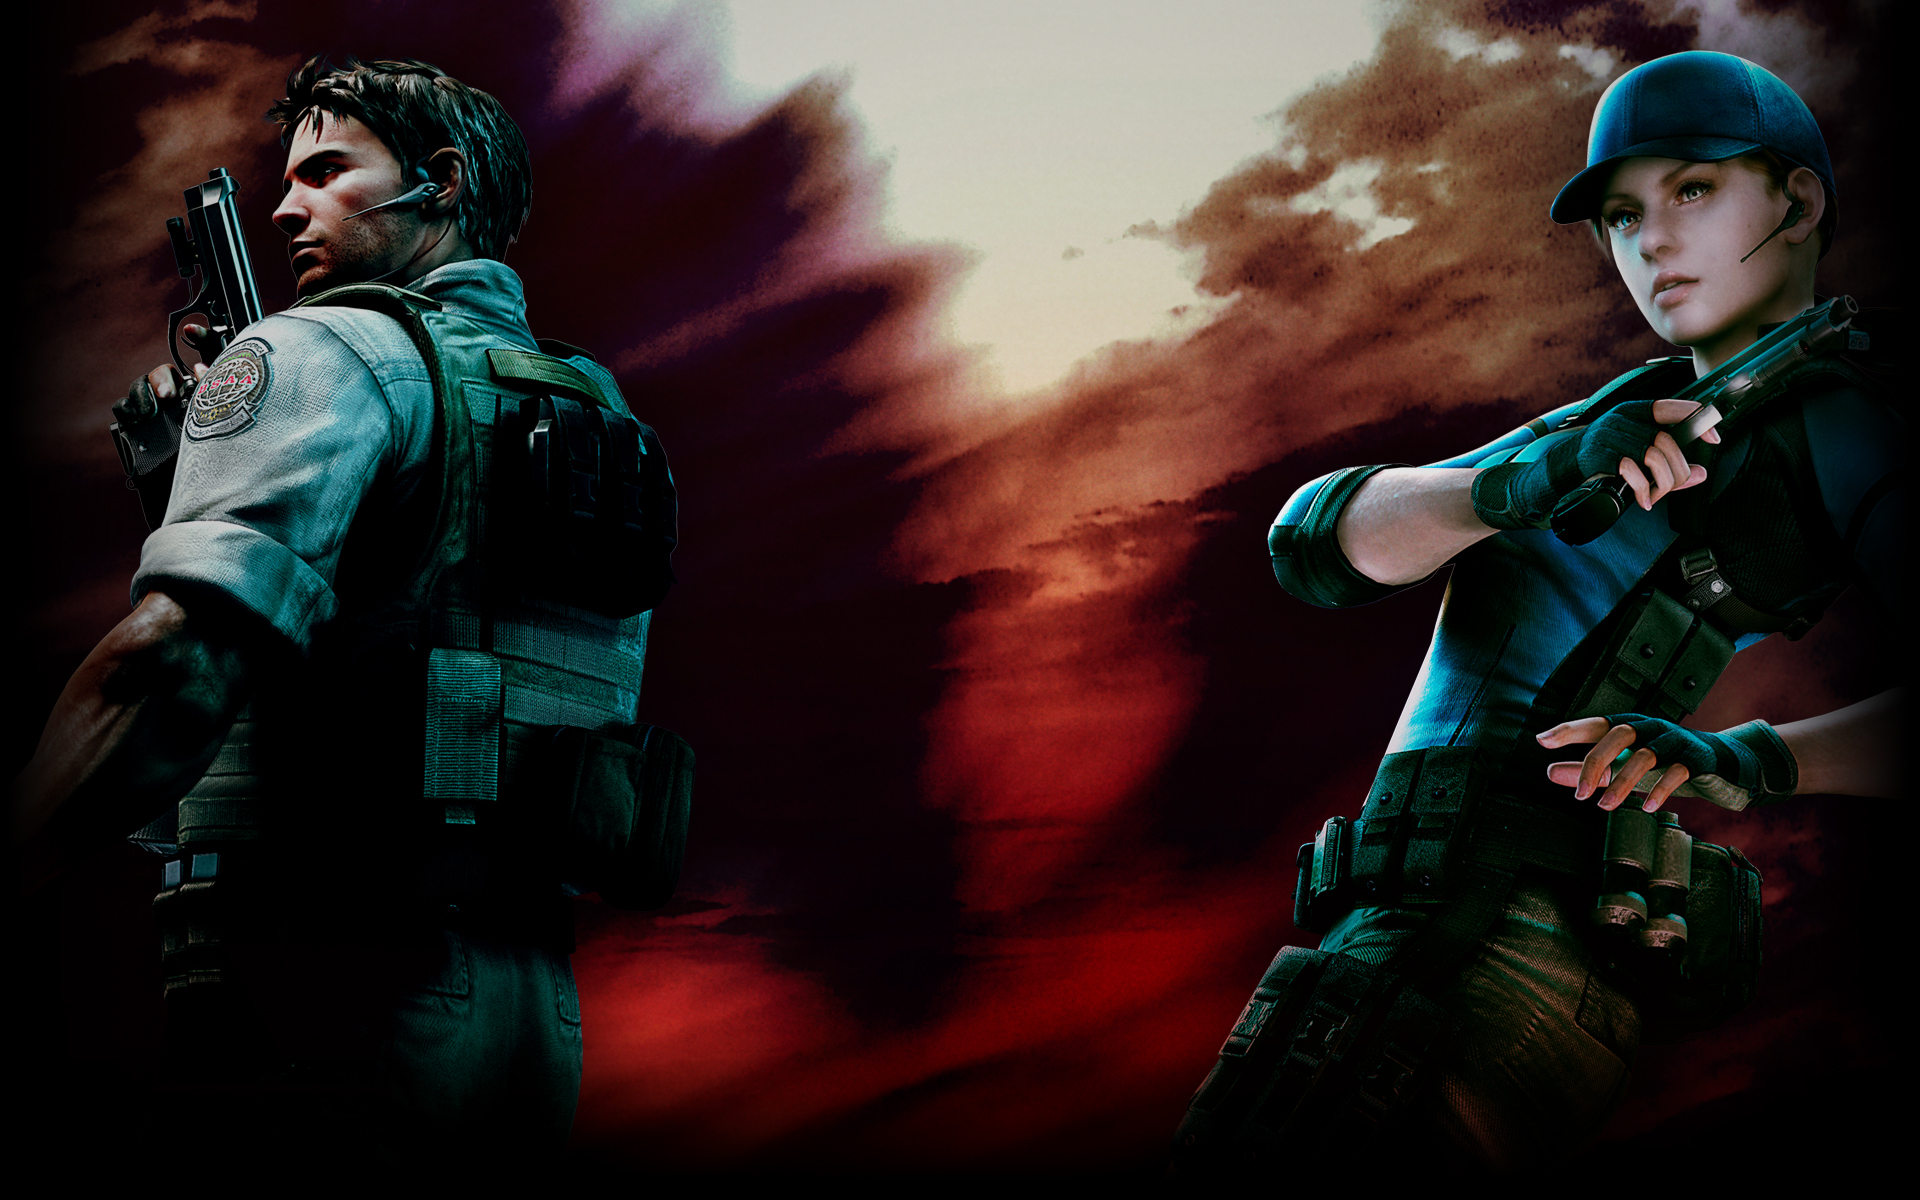 Chris and Jill - Resident Evil 5 Wallpaper (40430066) - Fanpop